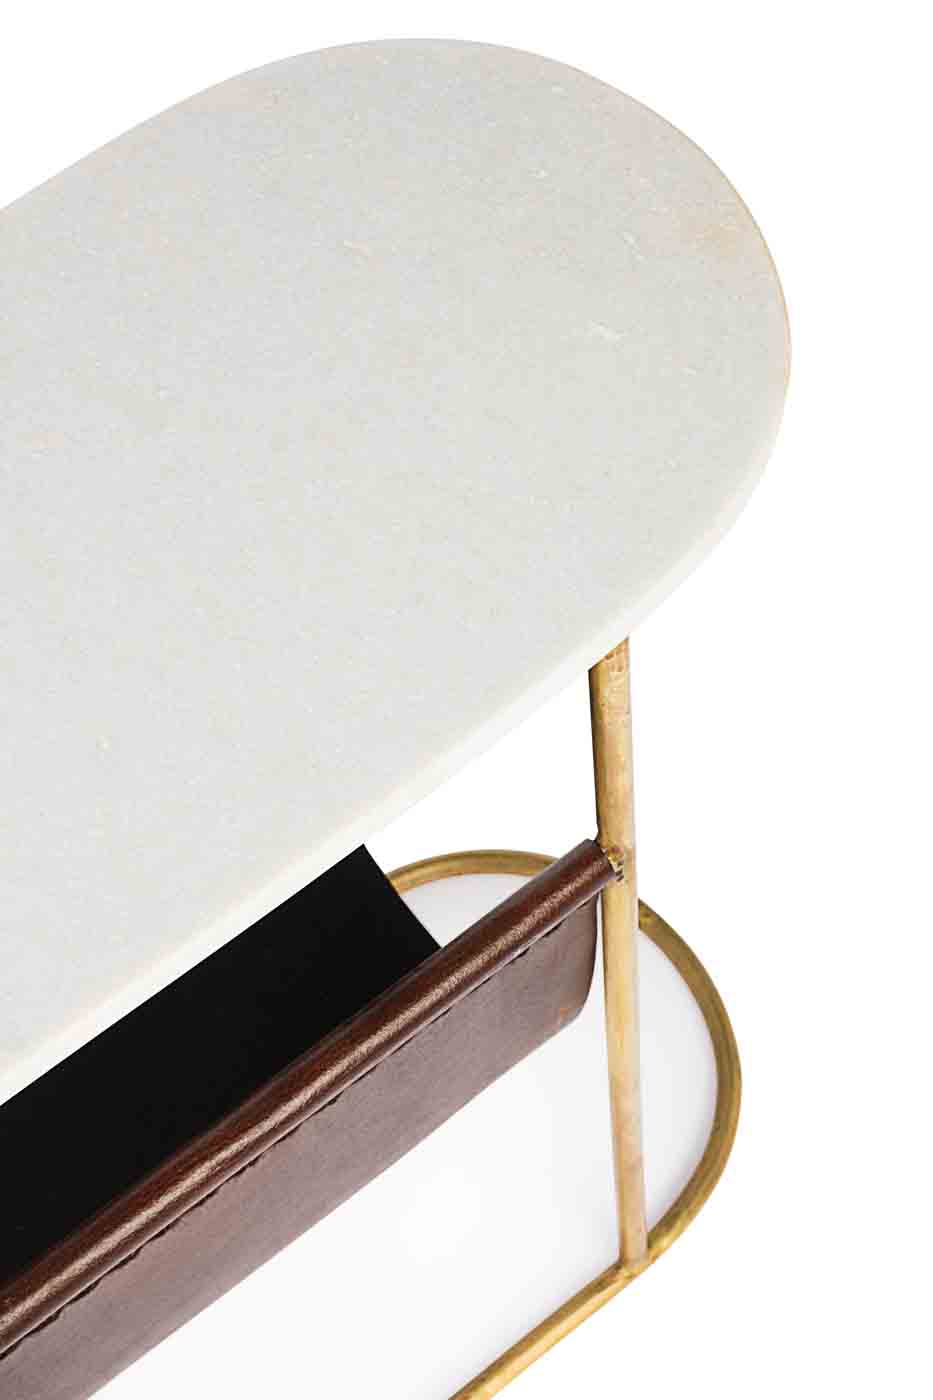 Das Gestell des Beistelltisches Marm ist aus vergoldetem Metall hergestellt. Die Tischplatte ist aus Marmor und unterstreicht das klassische Design. Der Tisch verfügt über ein Zeitschriftständer aus echtem Leder.